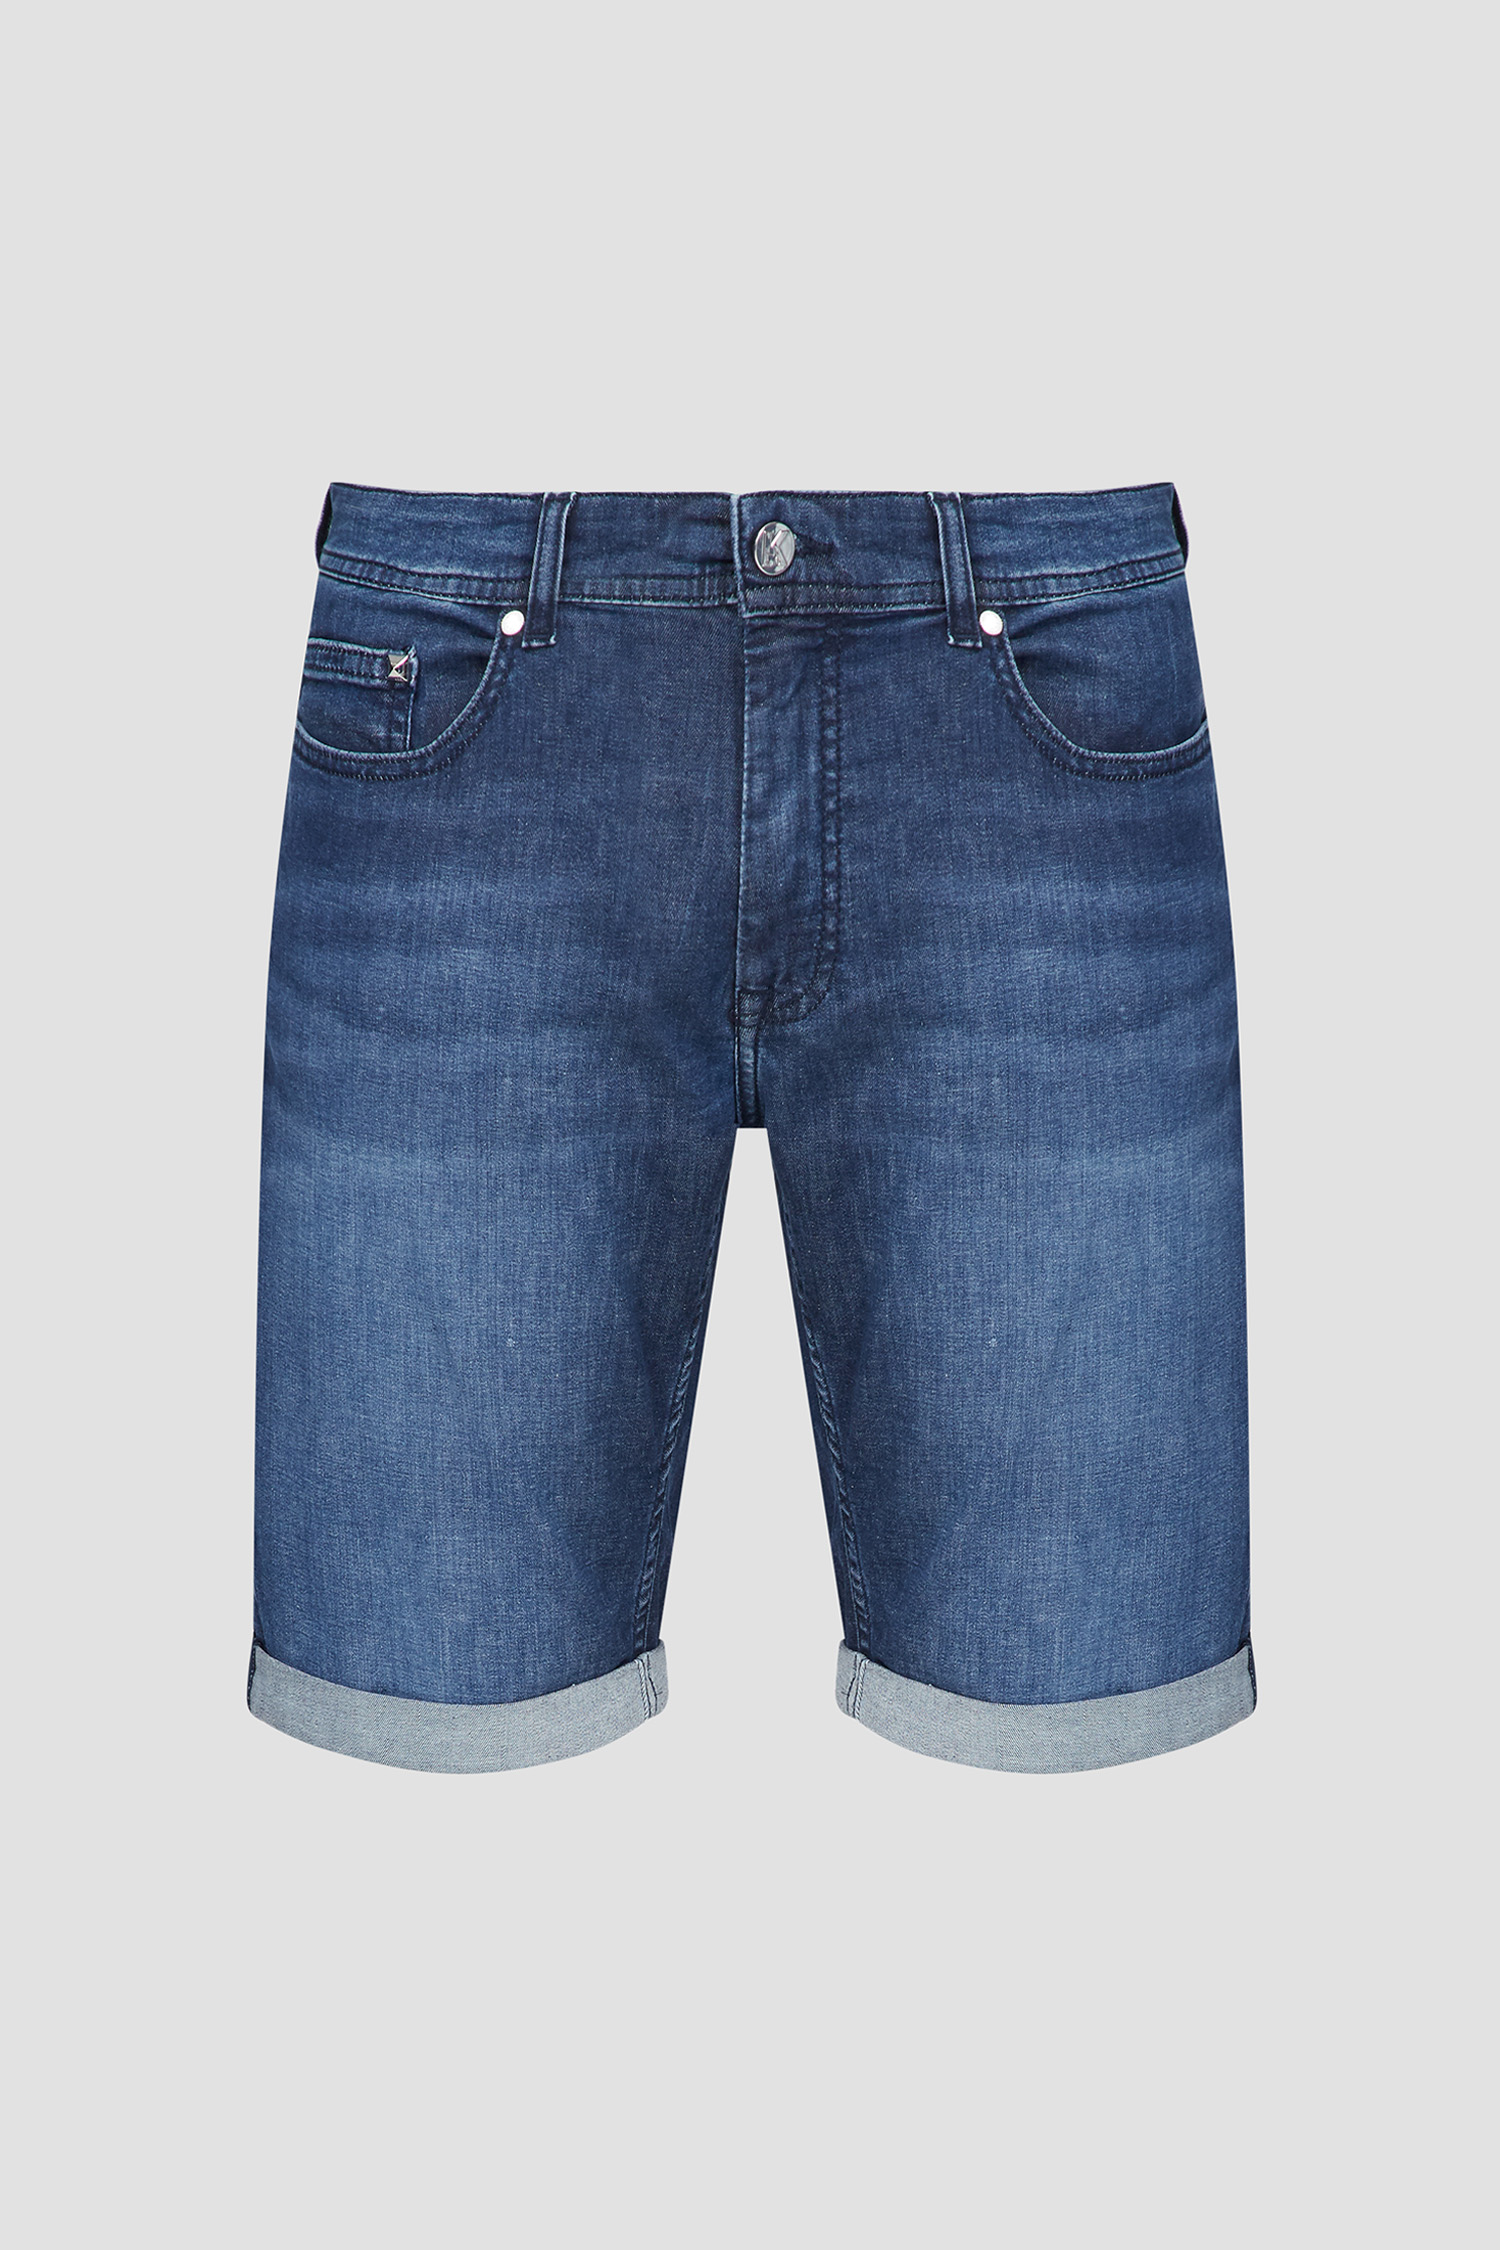 Мужские синие джинсовые шорты Karl Lagerfeld 532833.265820;670